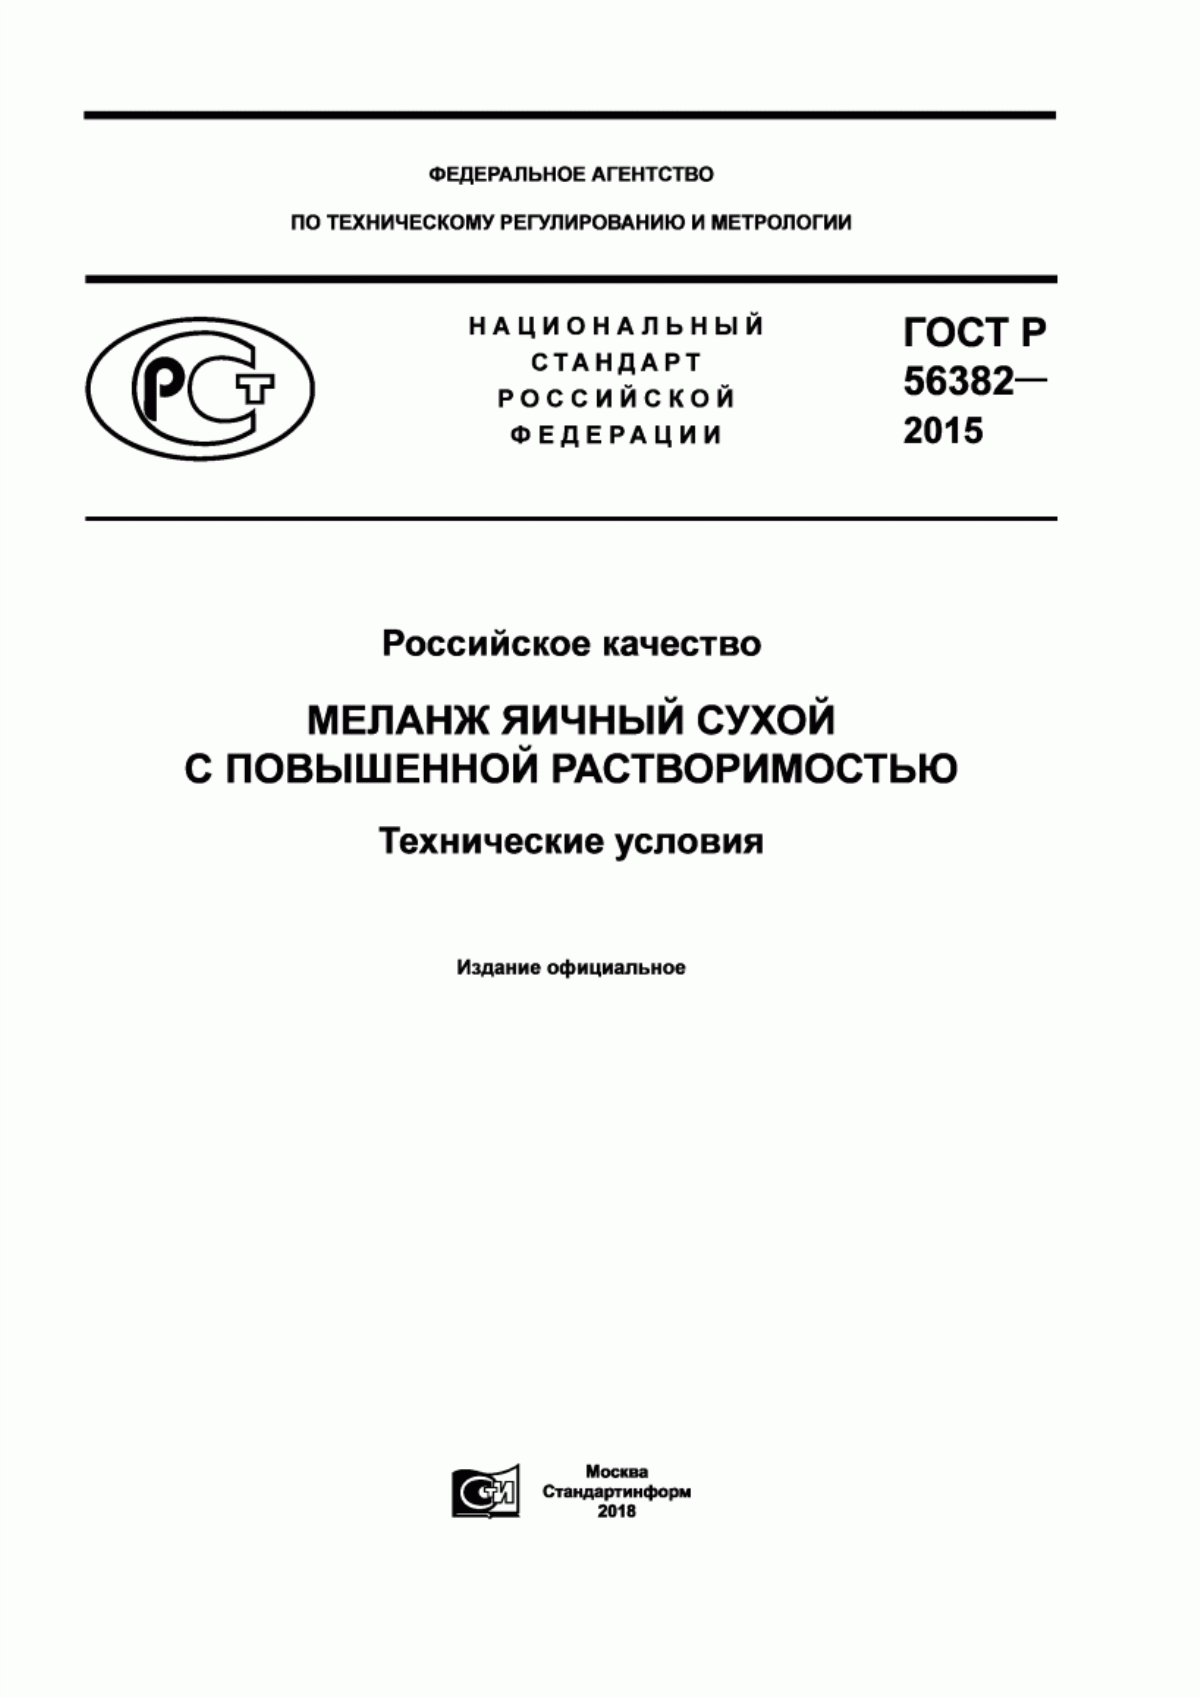 ГОСТ Р 56382-2015 Российское качество. Меланж яичный сухой с повышенной растворимостью. Технические условия